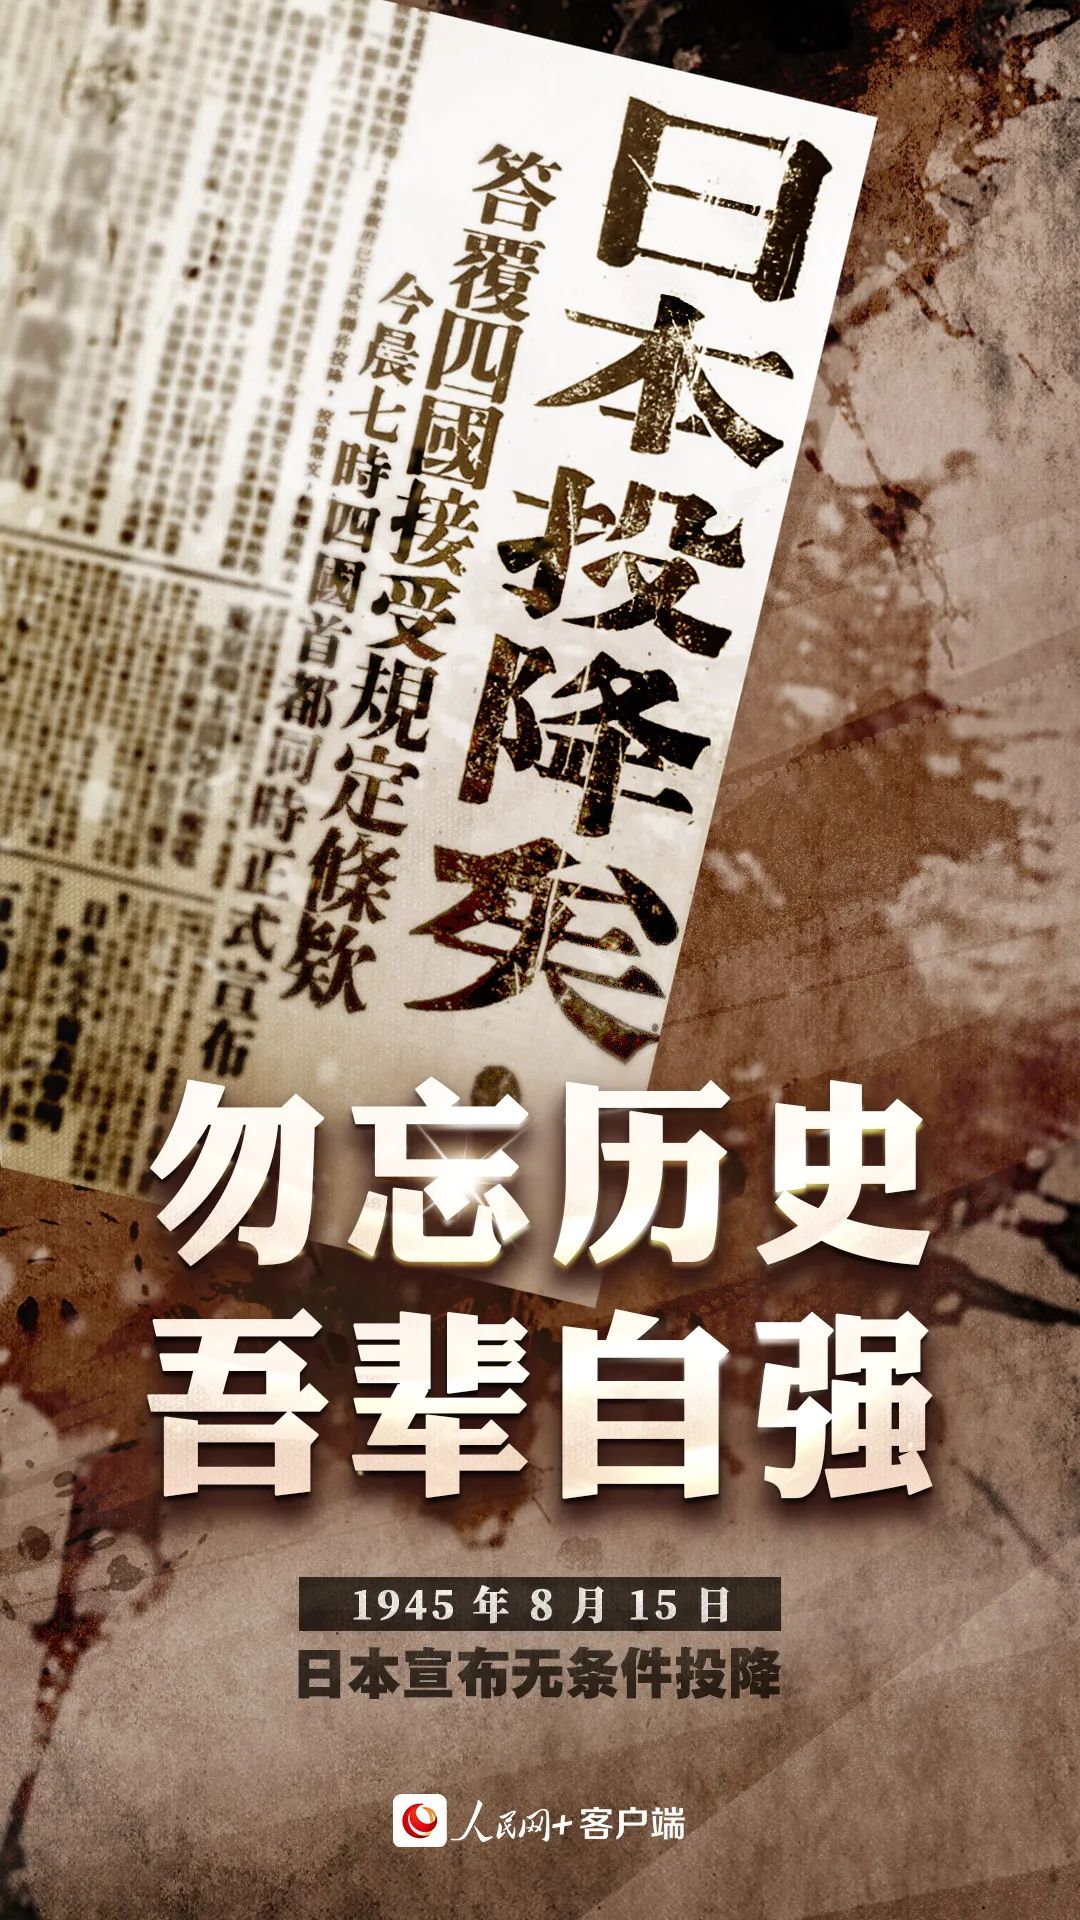 關於日本第二次世界大戰投降的5件事 - 軍事 - 中時新聞網